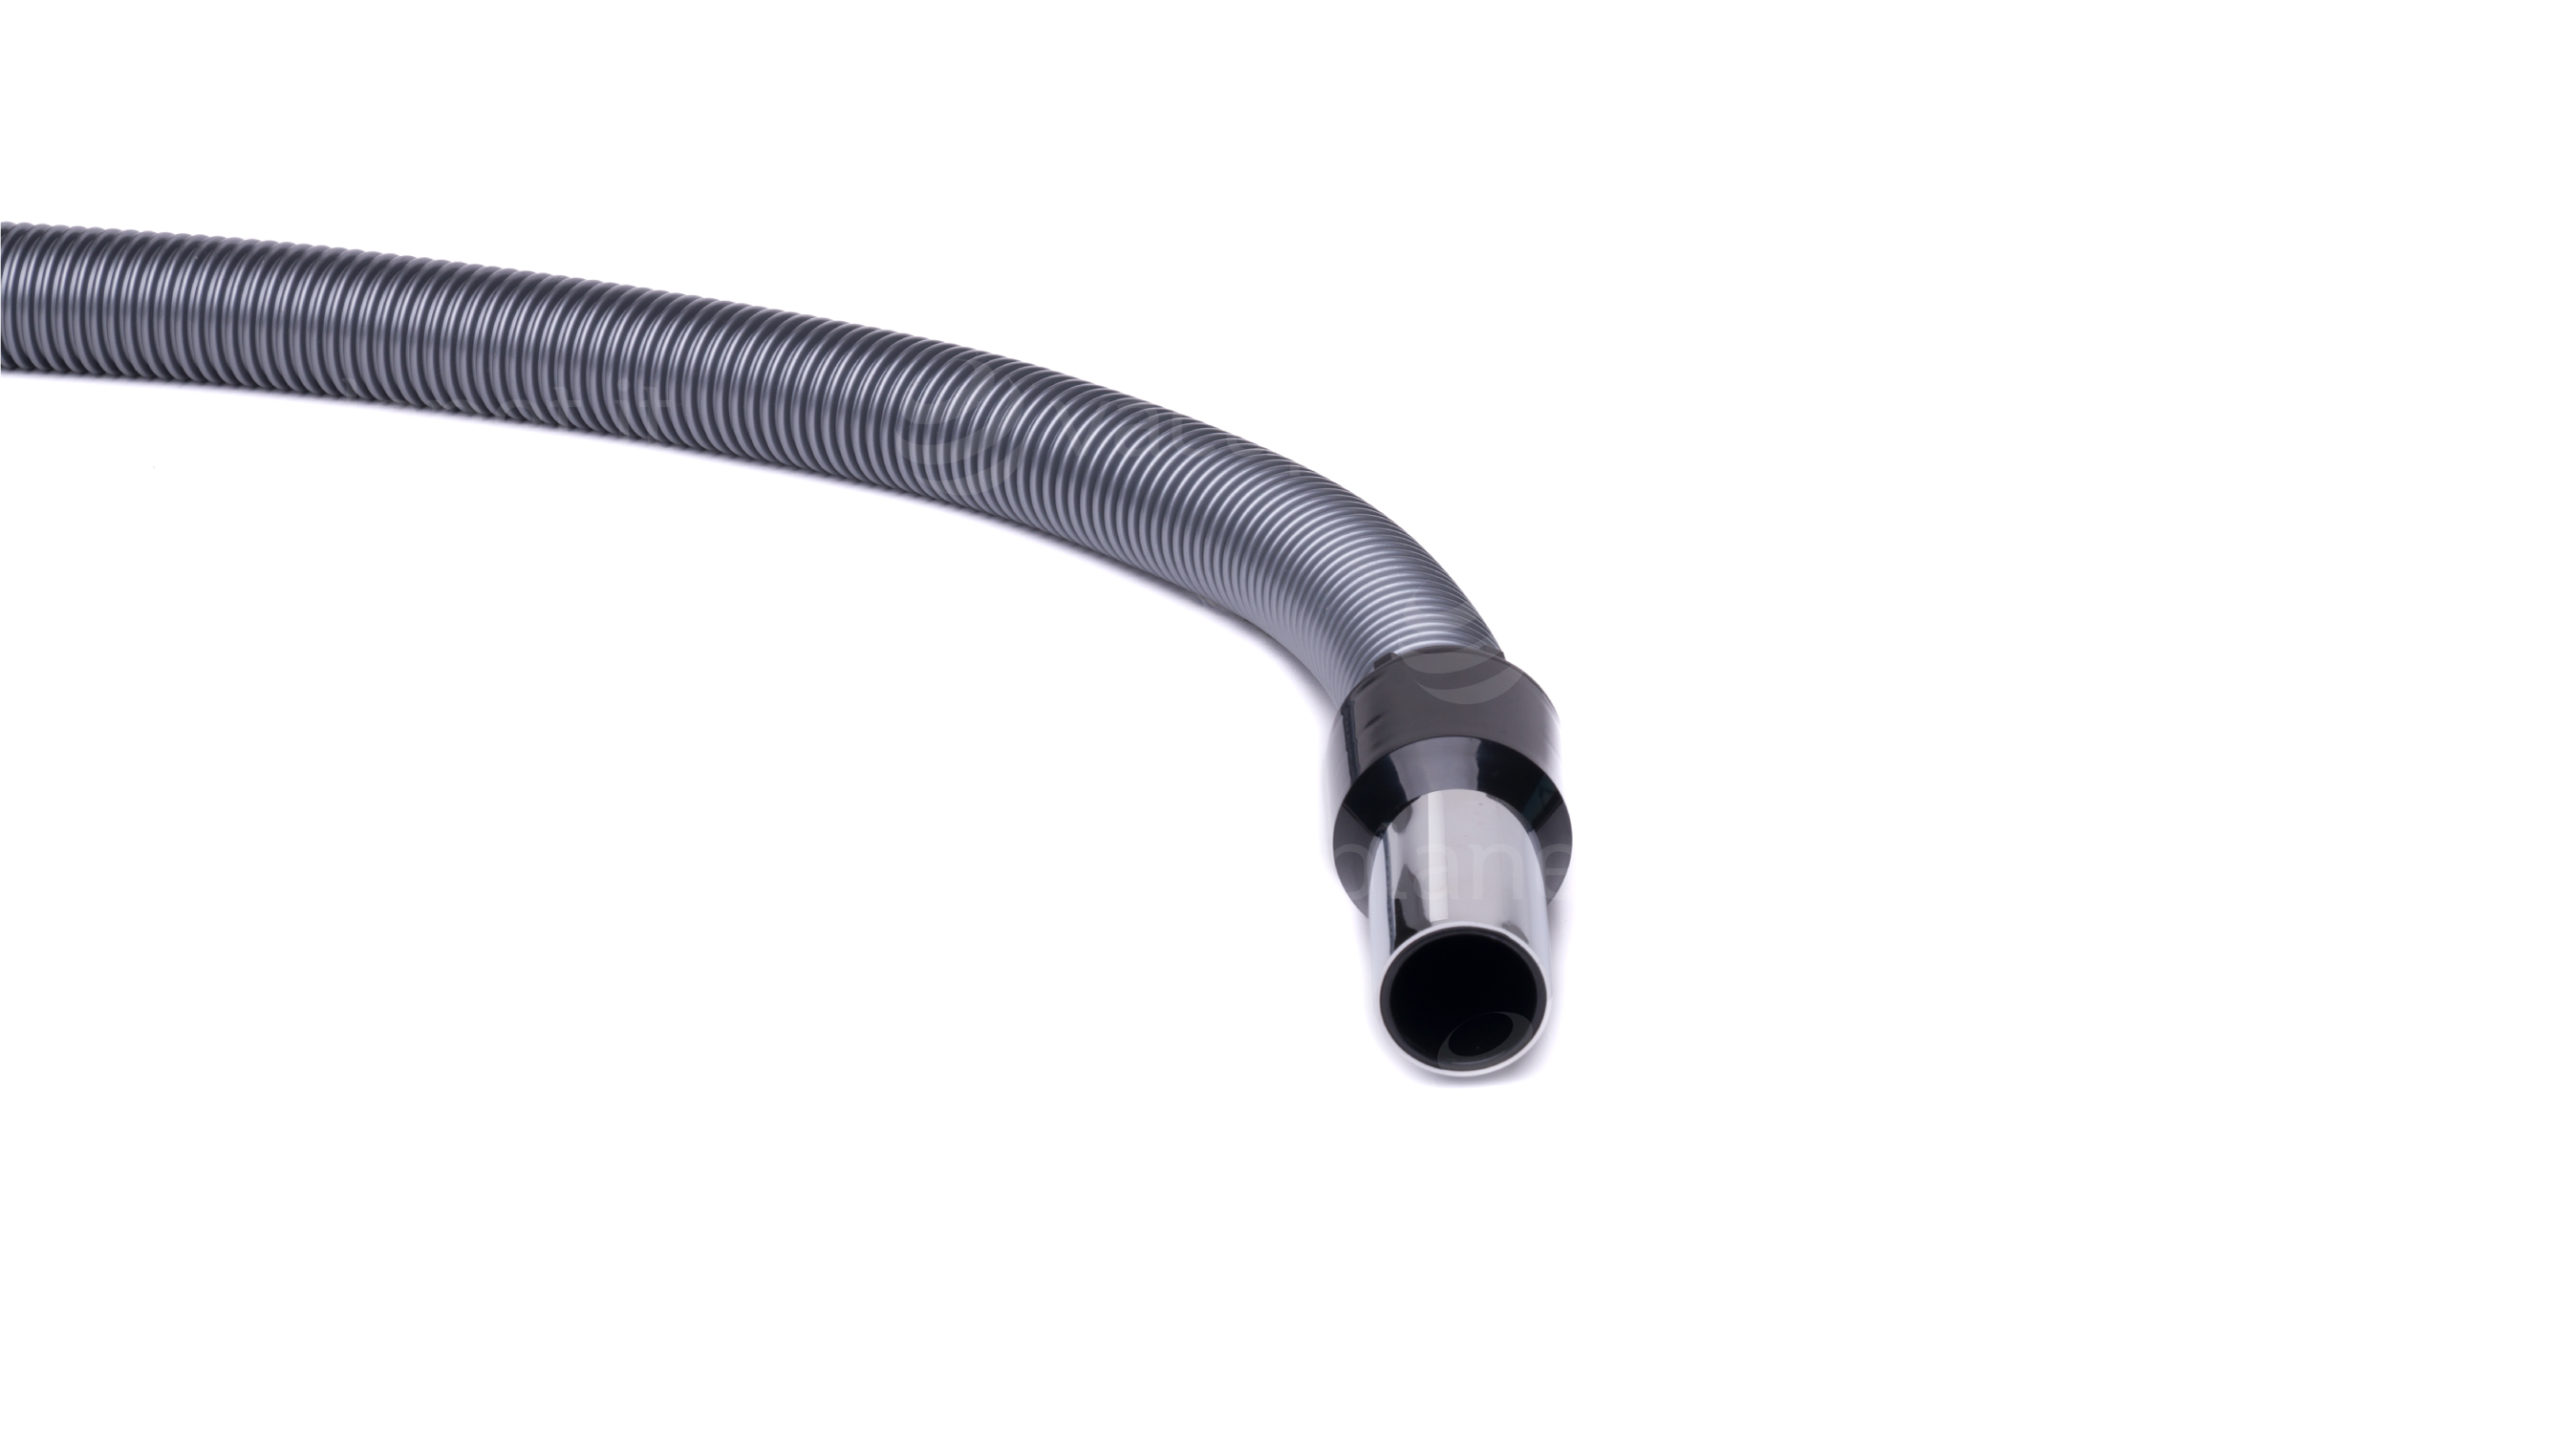 Dettaglio dell'estremità del tubo flessibile per aspirapolvere centralizzato con raccordo tubo-presa